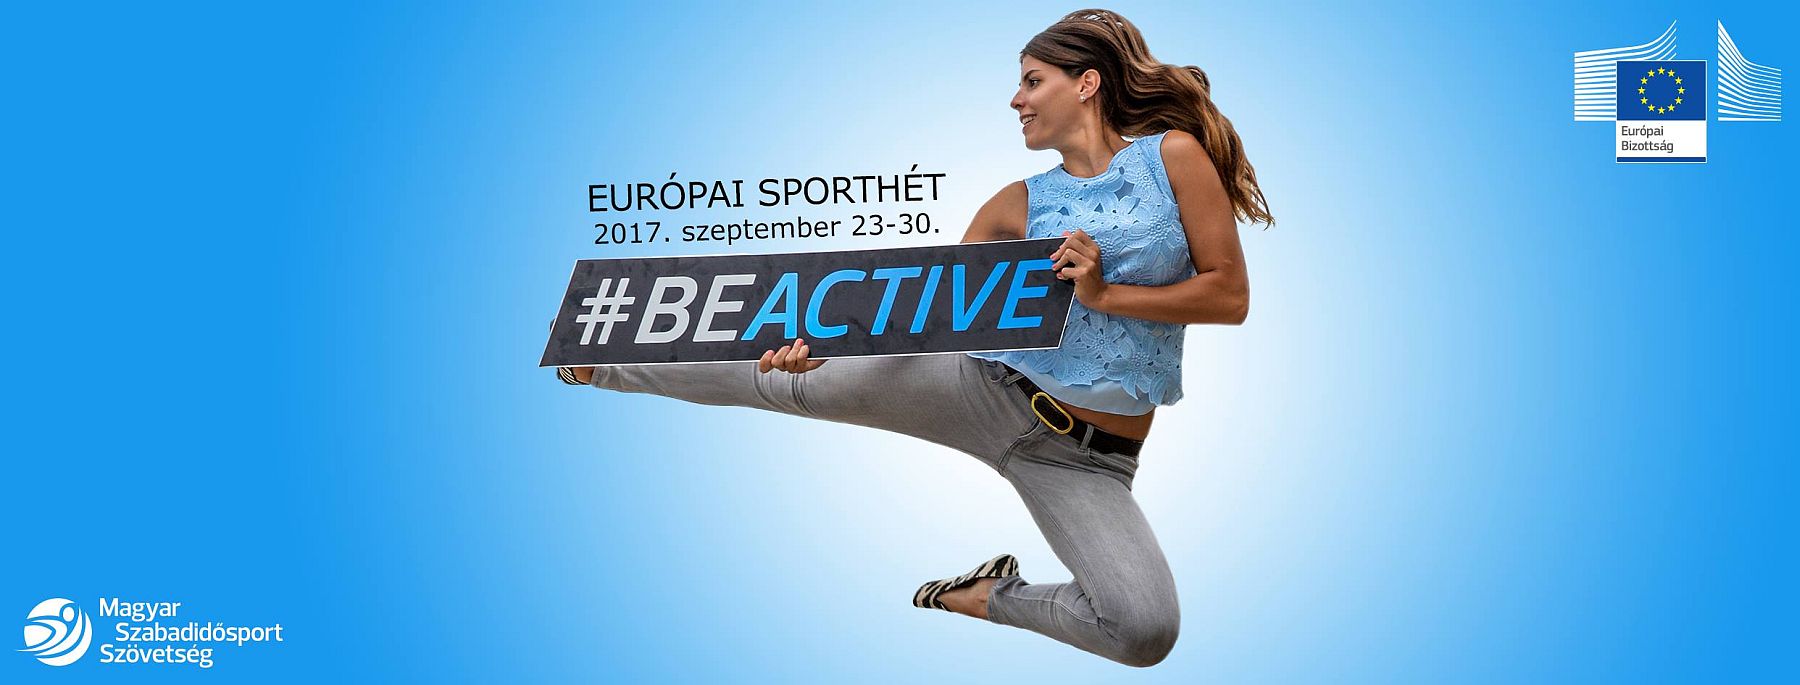 Szombattól szombatig tartanak az Európai Sporthét székesfehérvári programjai